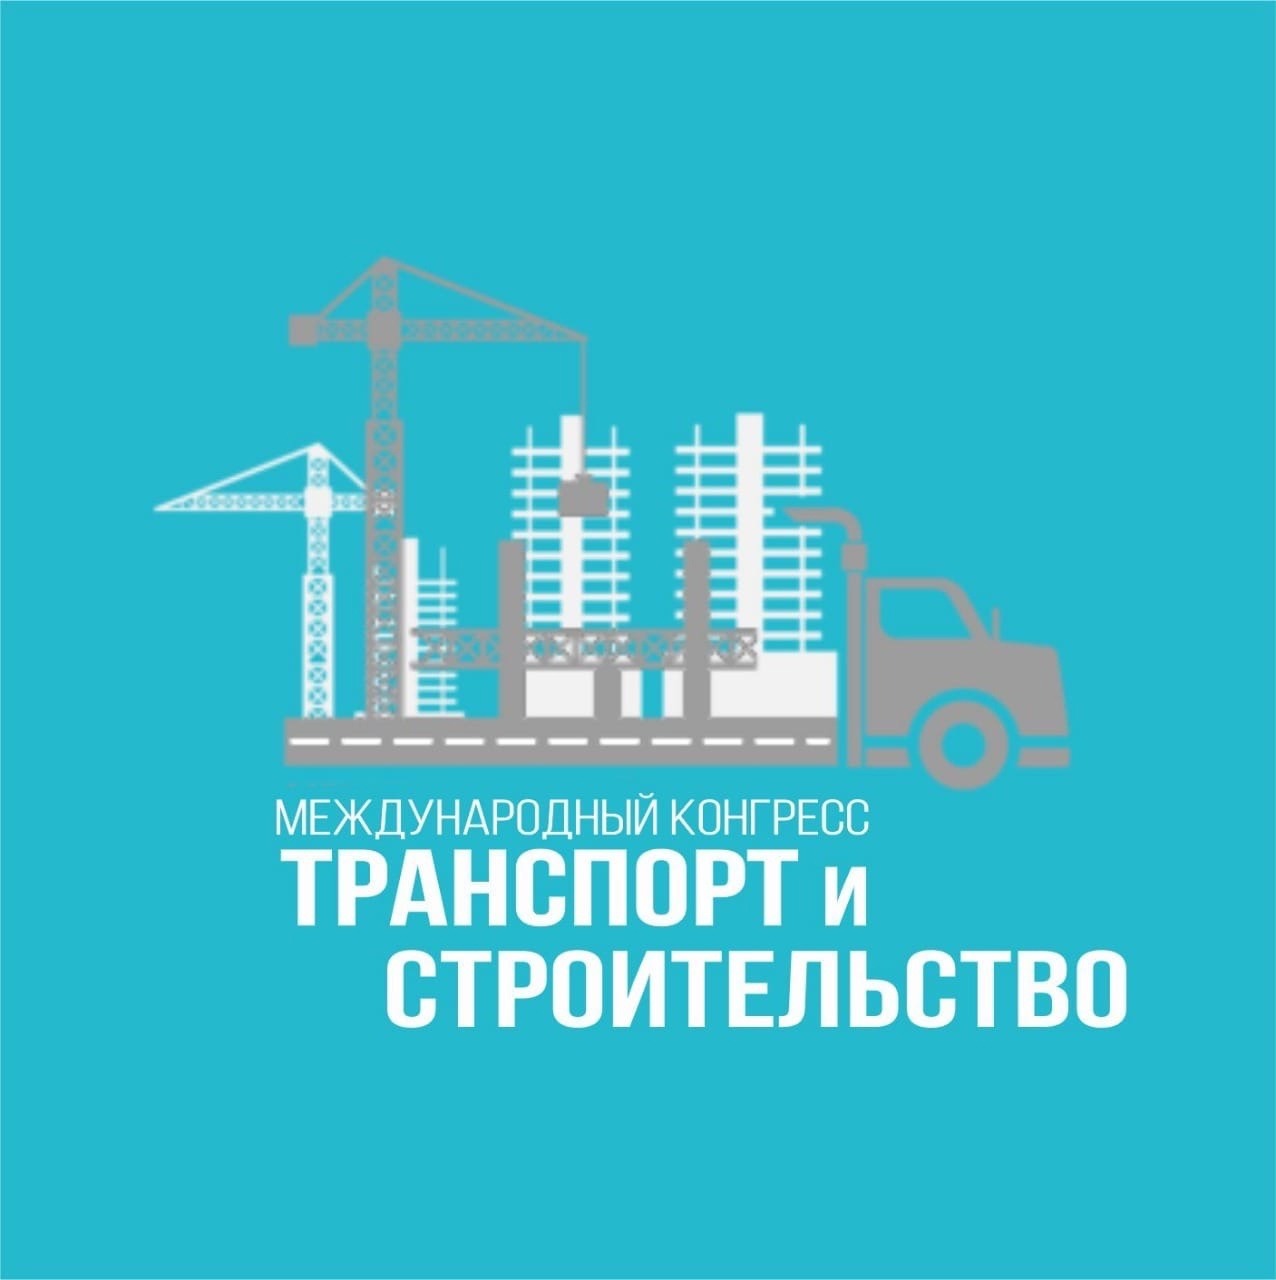 Состоится Первый Международный конгресс «Транспорт и строительство»